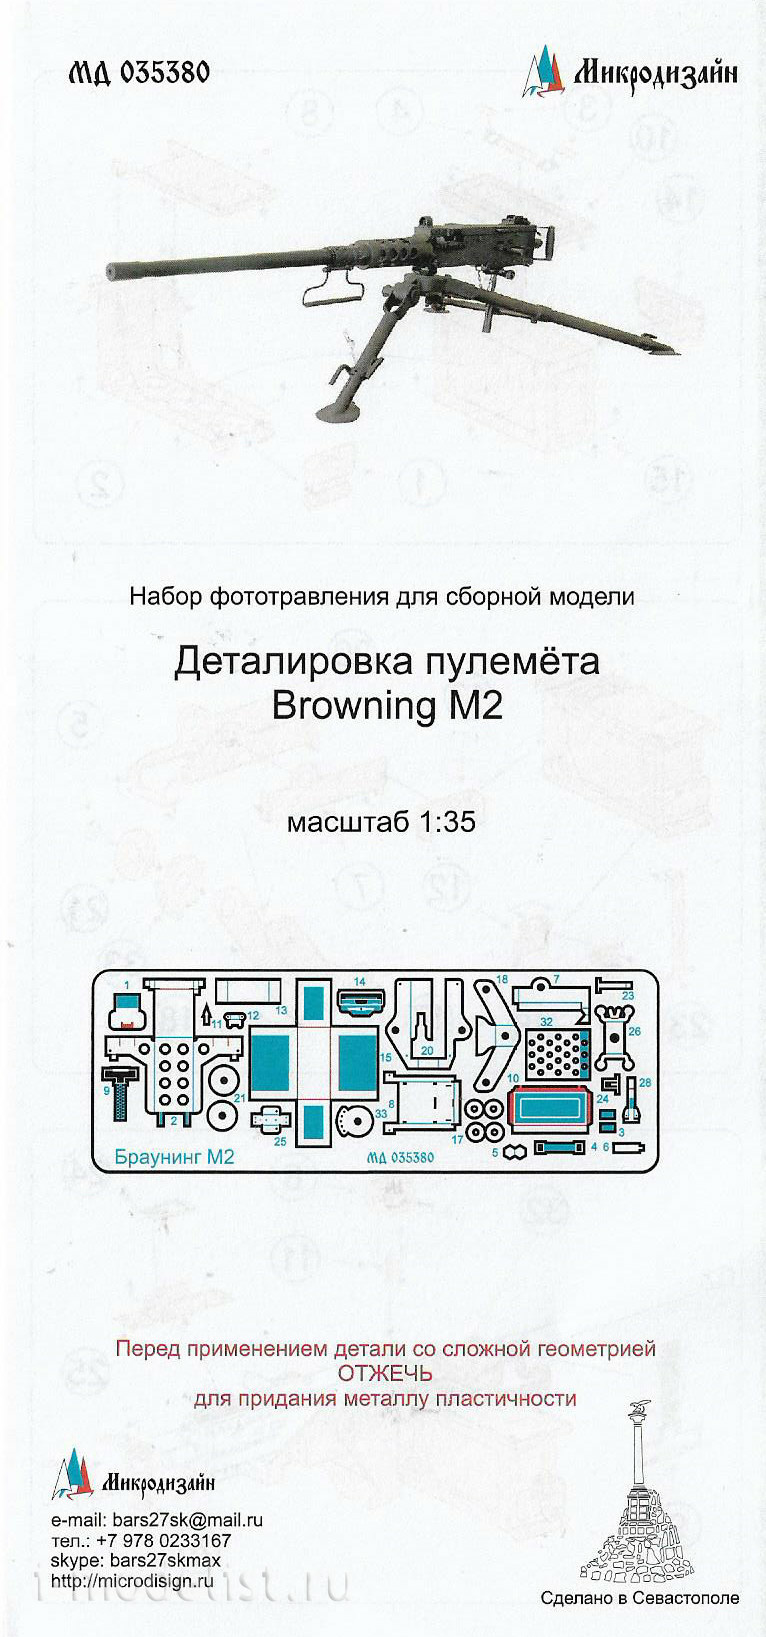 035380 micro Design 1/35 photo etching Kit for Browning M2 machine Gun